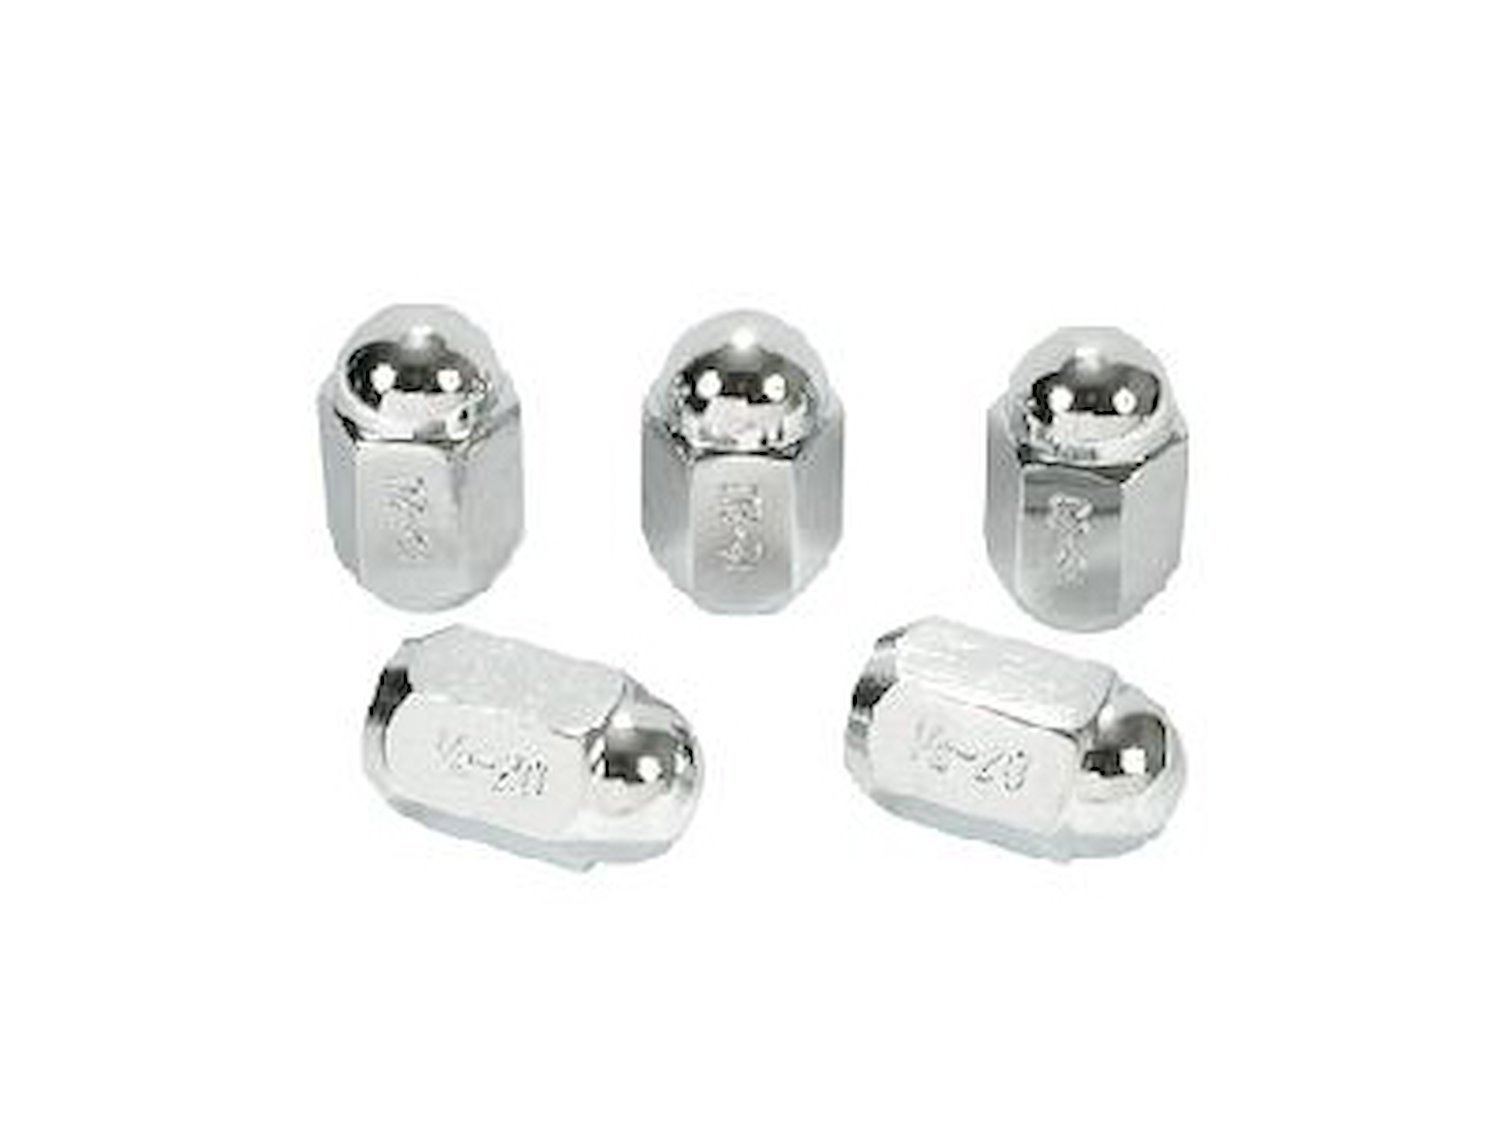 Chrome Lug Nuts - OE Steel Thread Size: 1/2" -20 RH